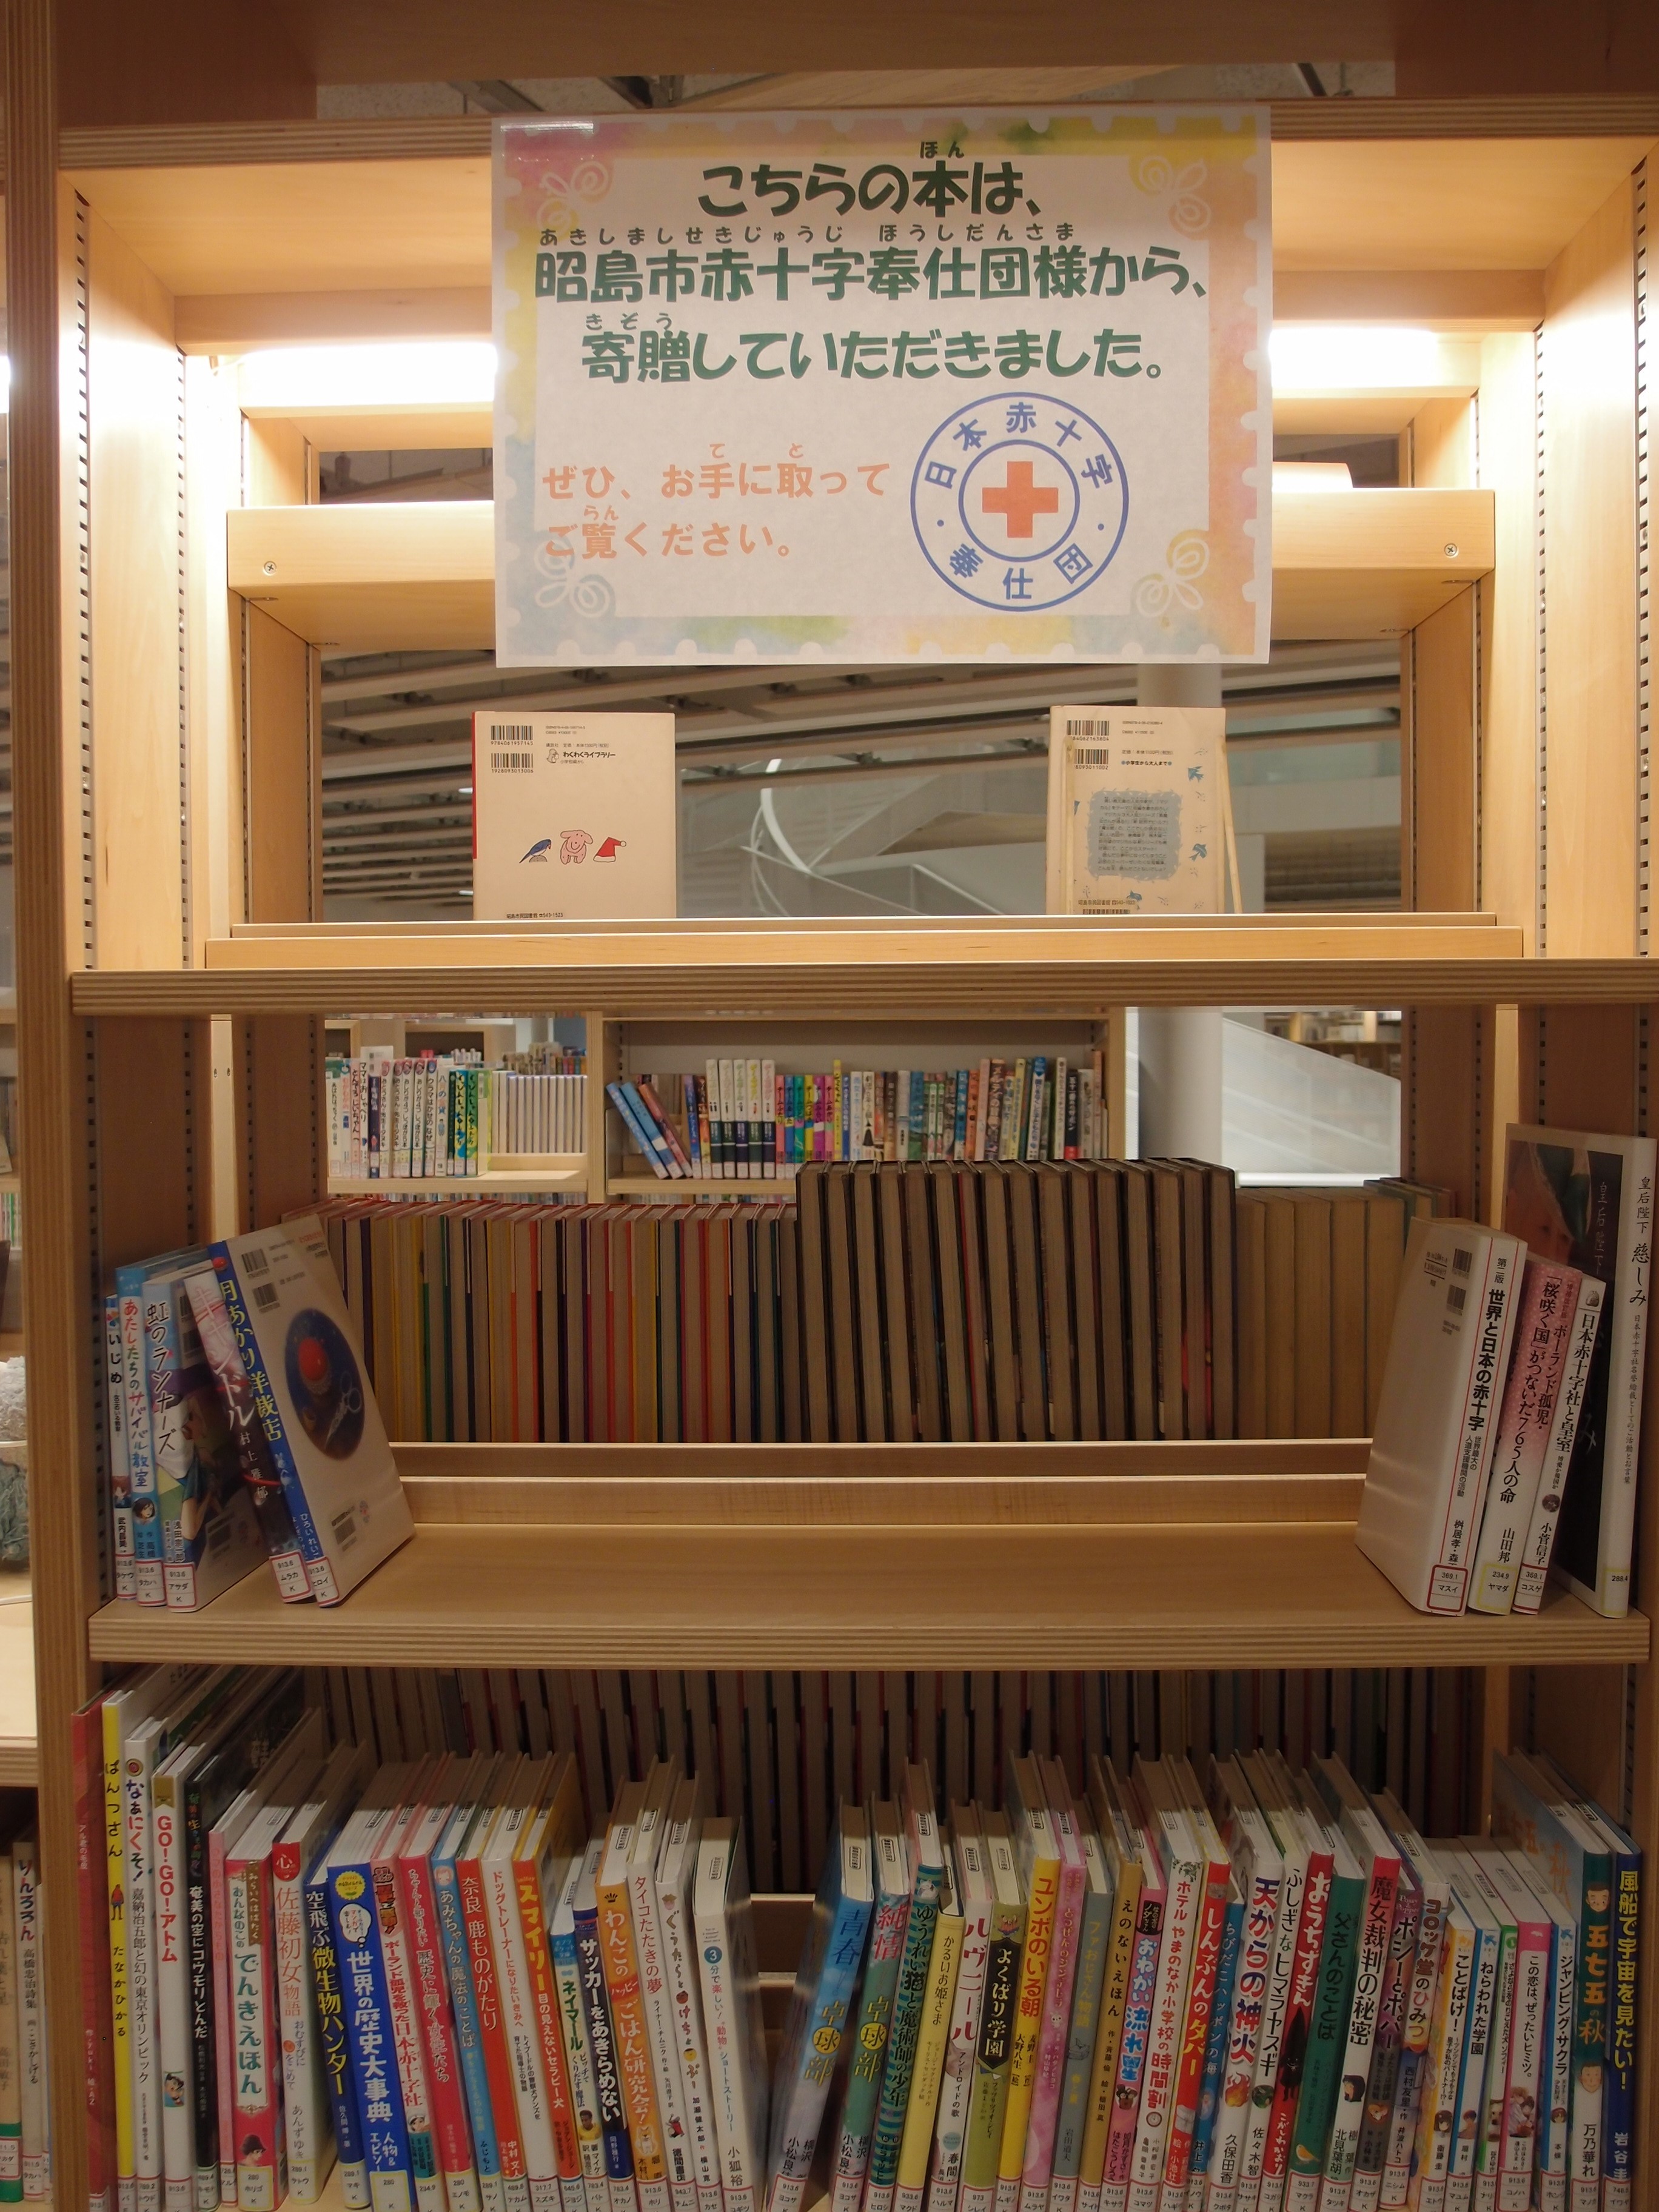 こちらの本は日本赤十字奉仕団様から寄贈していただきましたという貼り紙と展示写真